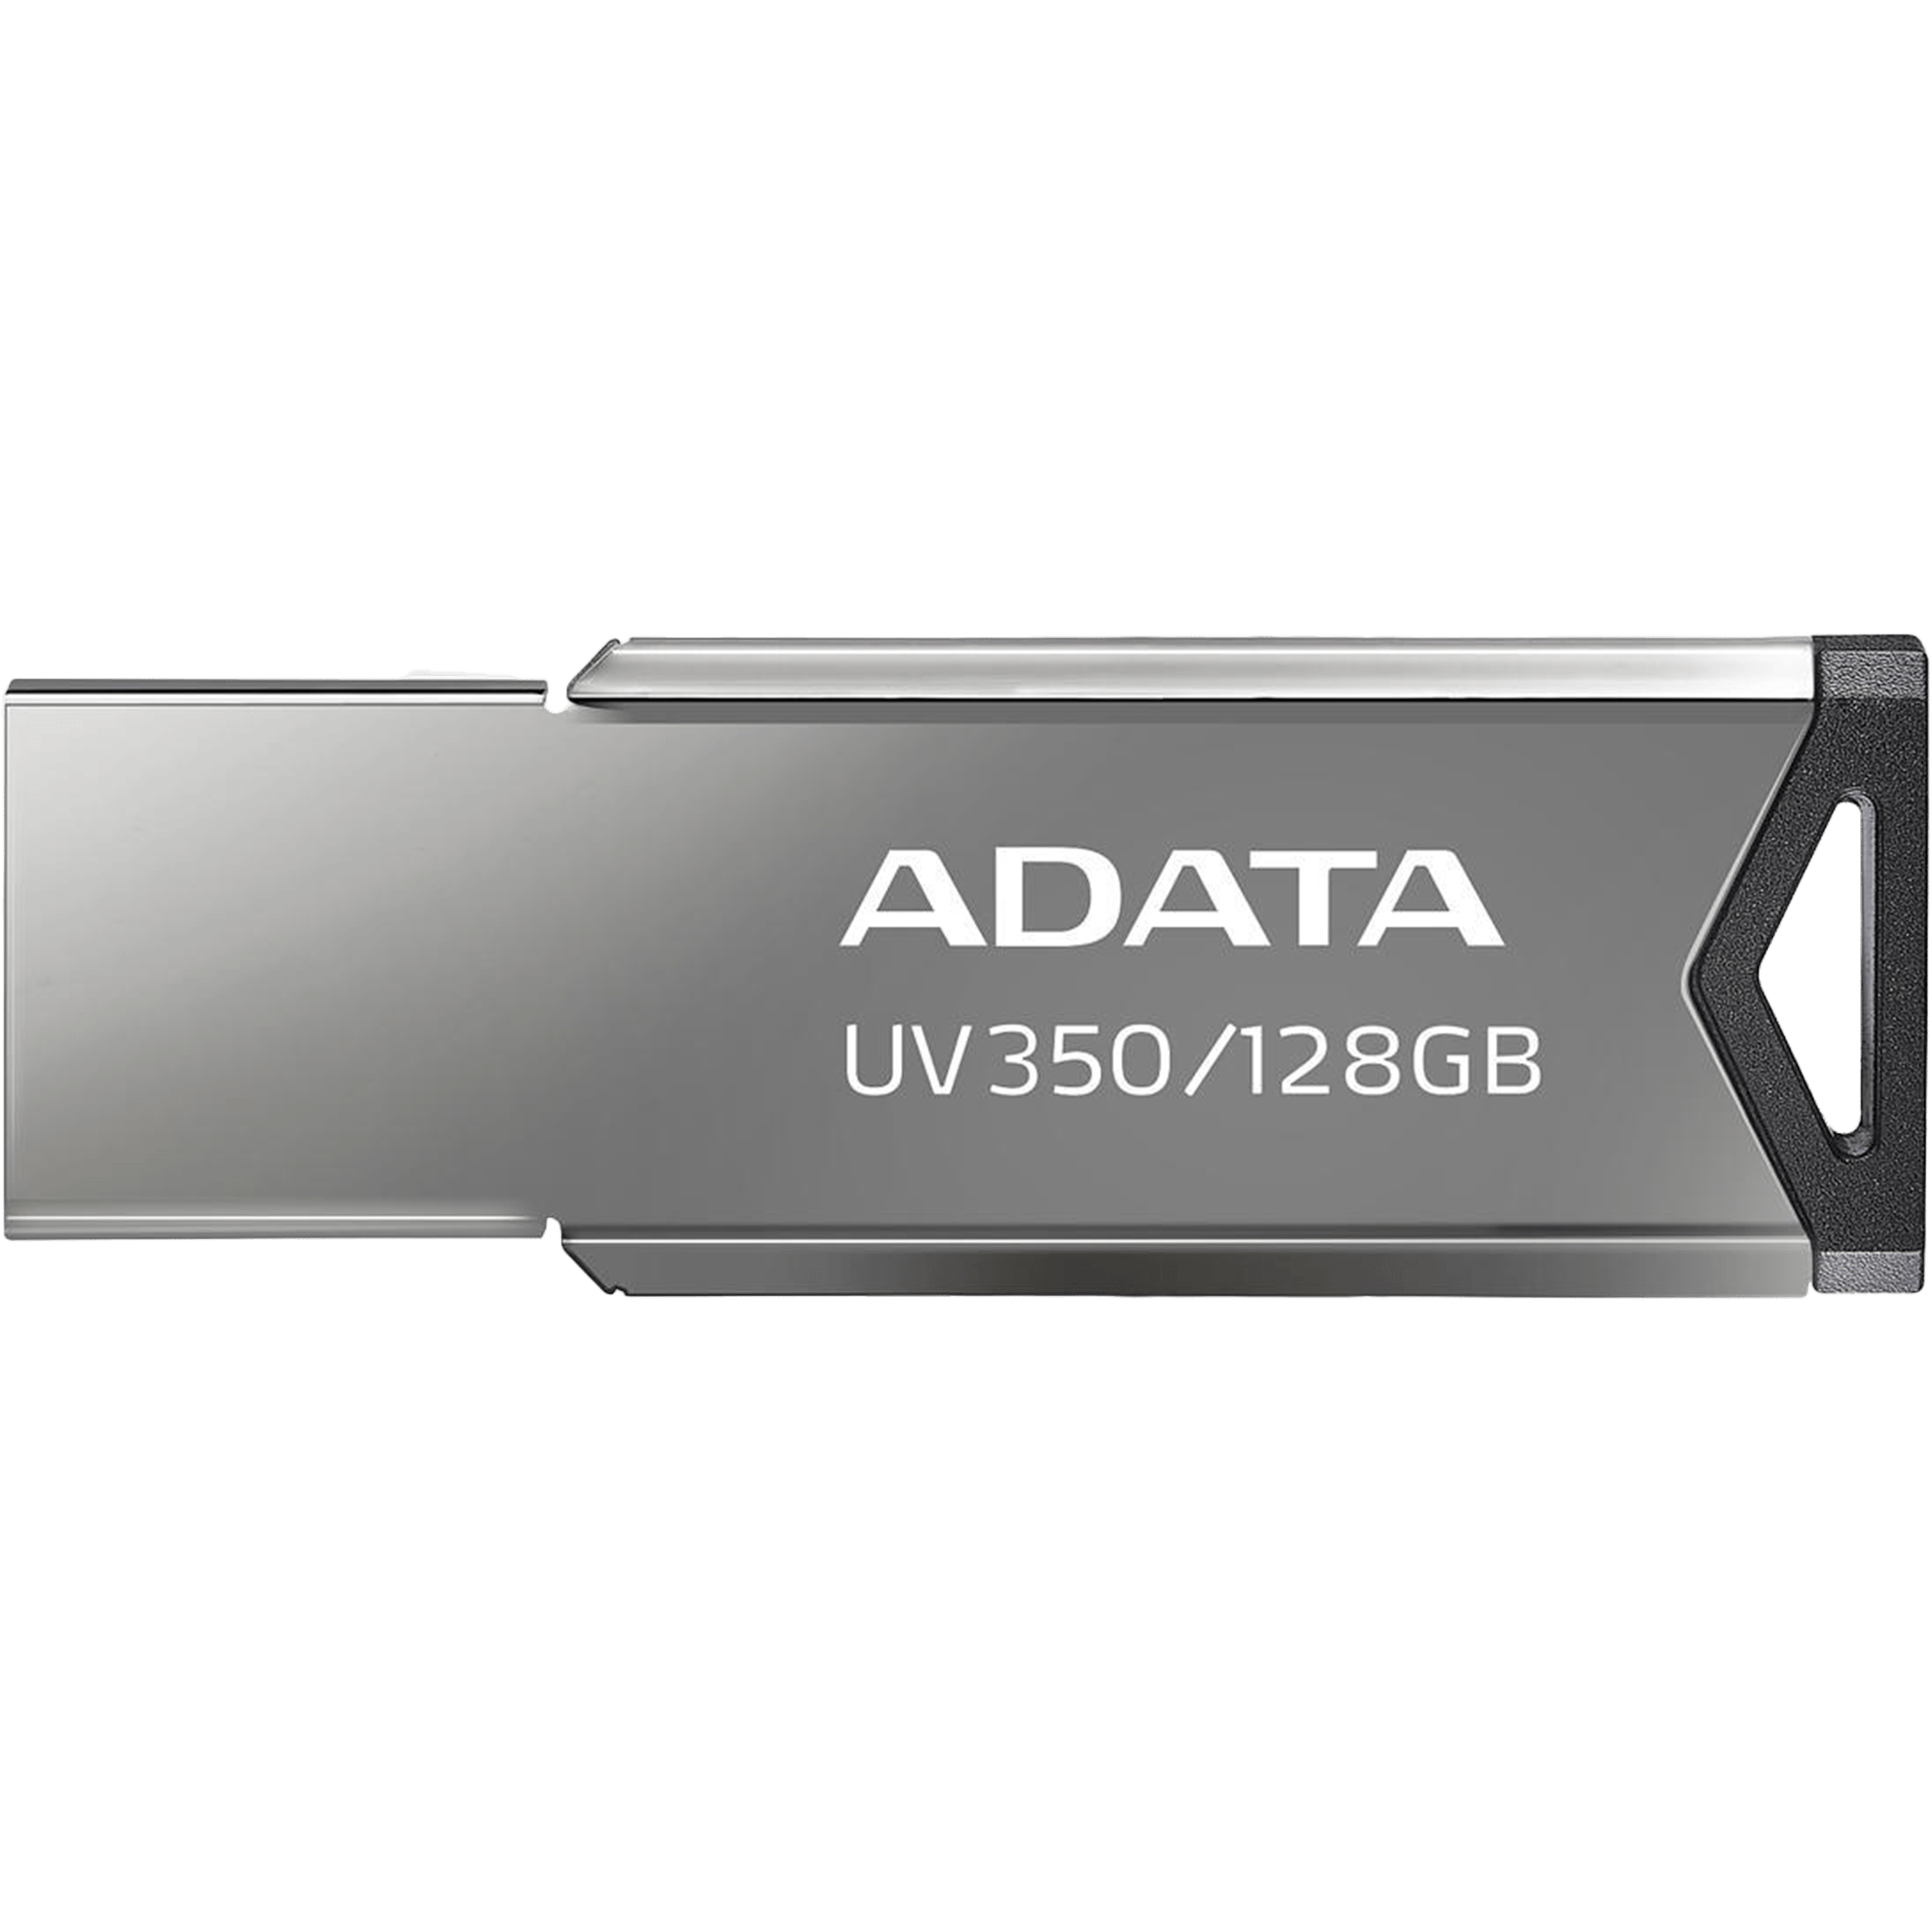 דיסק און קי ADATA USB 3.2 Flash Drive UV350 128GB - צבע כסוף חמש שנות אחריות ע